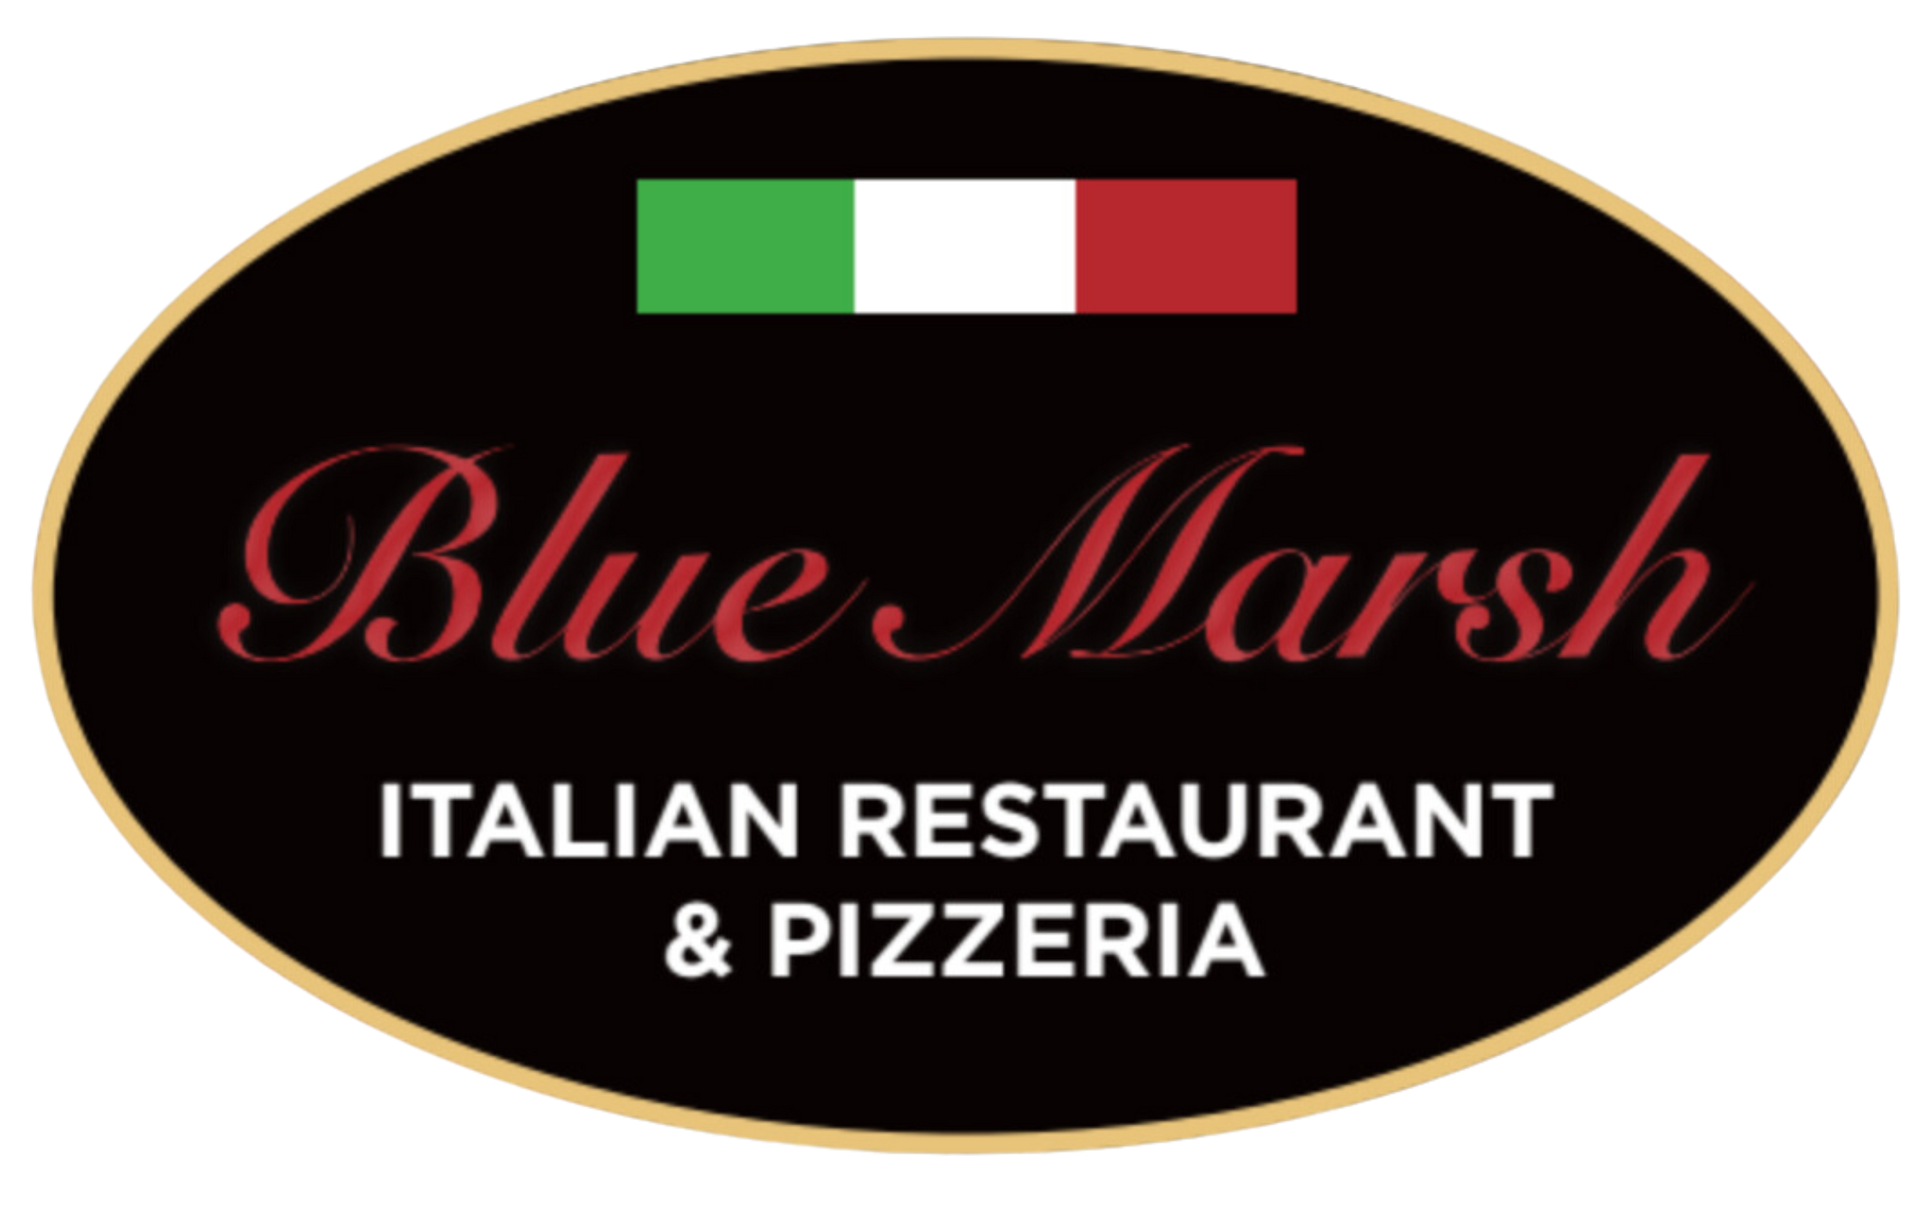 The logo for blue marsh italian restaurant and pizzeria